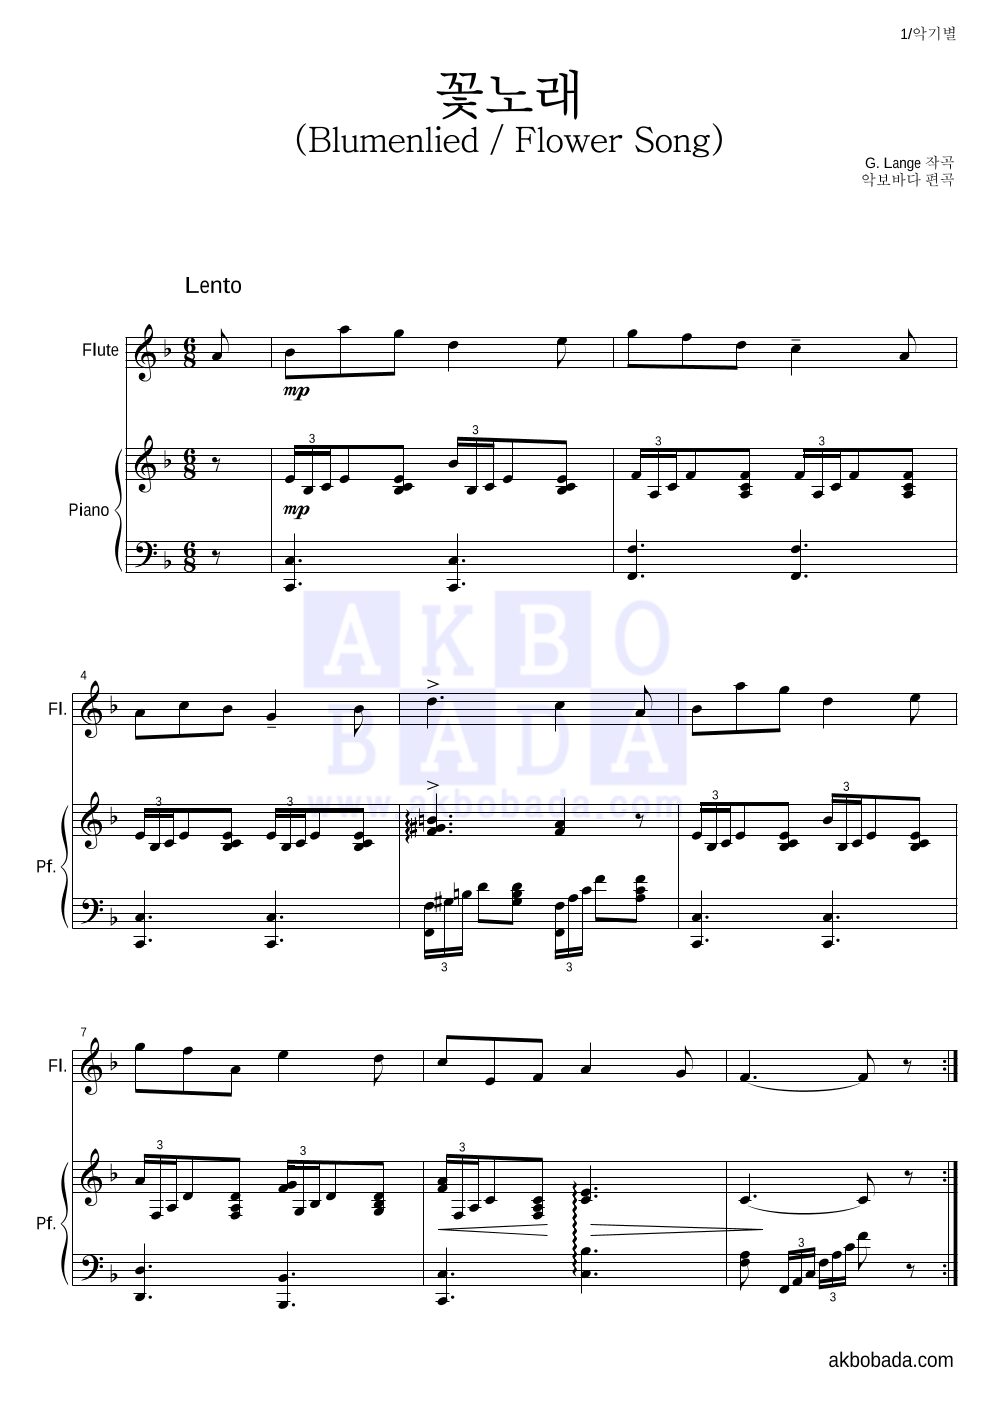 랑게 - 꽃노래 (Blumenlied) (Flower Song) 플룻&피아노 악보 